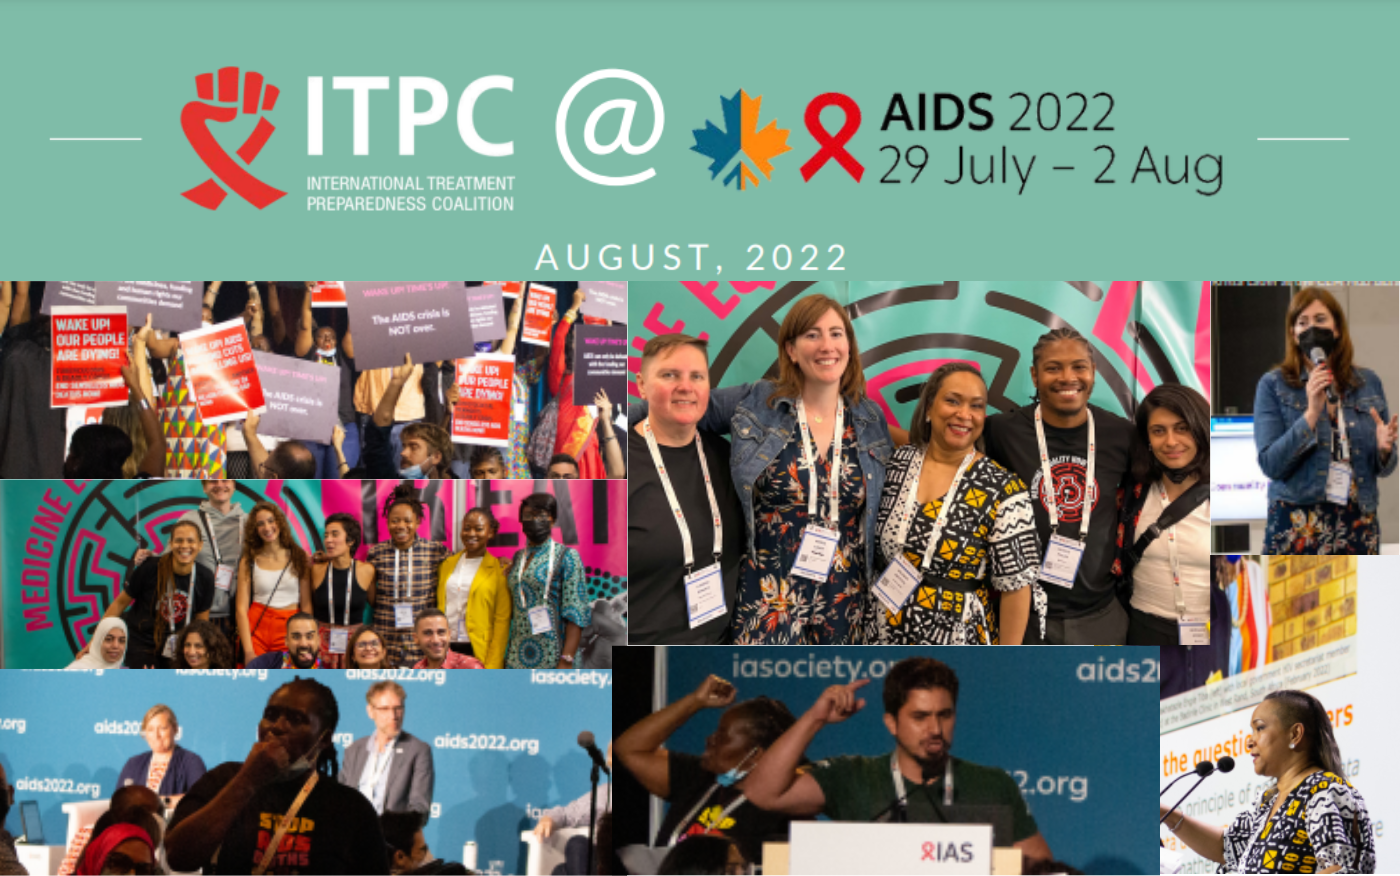 ITPC at AIDS2022 highlights